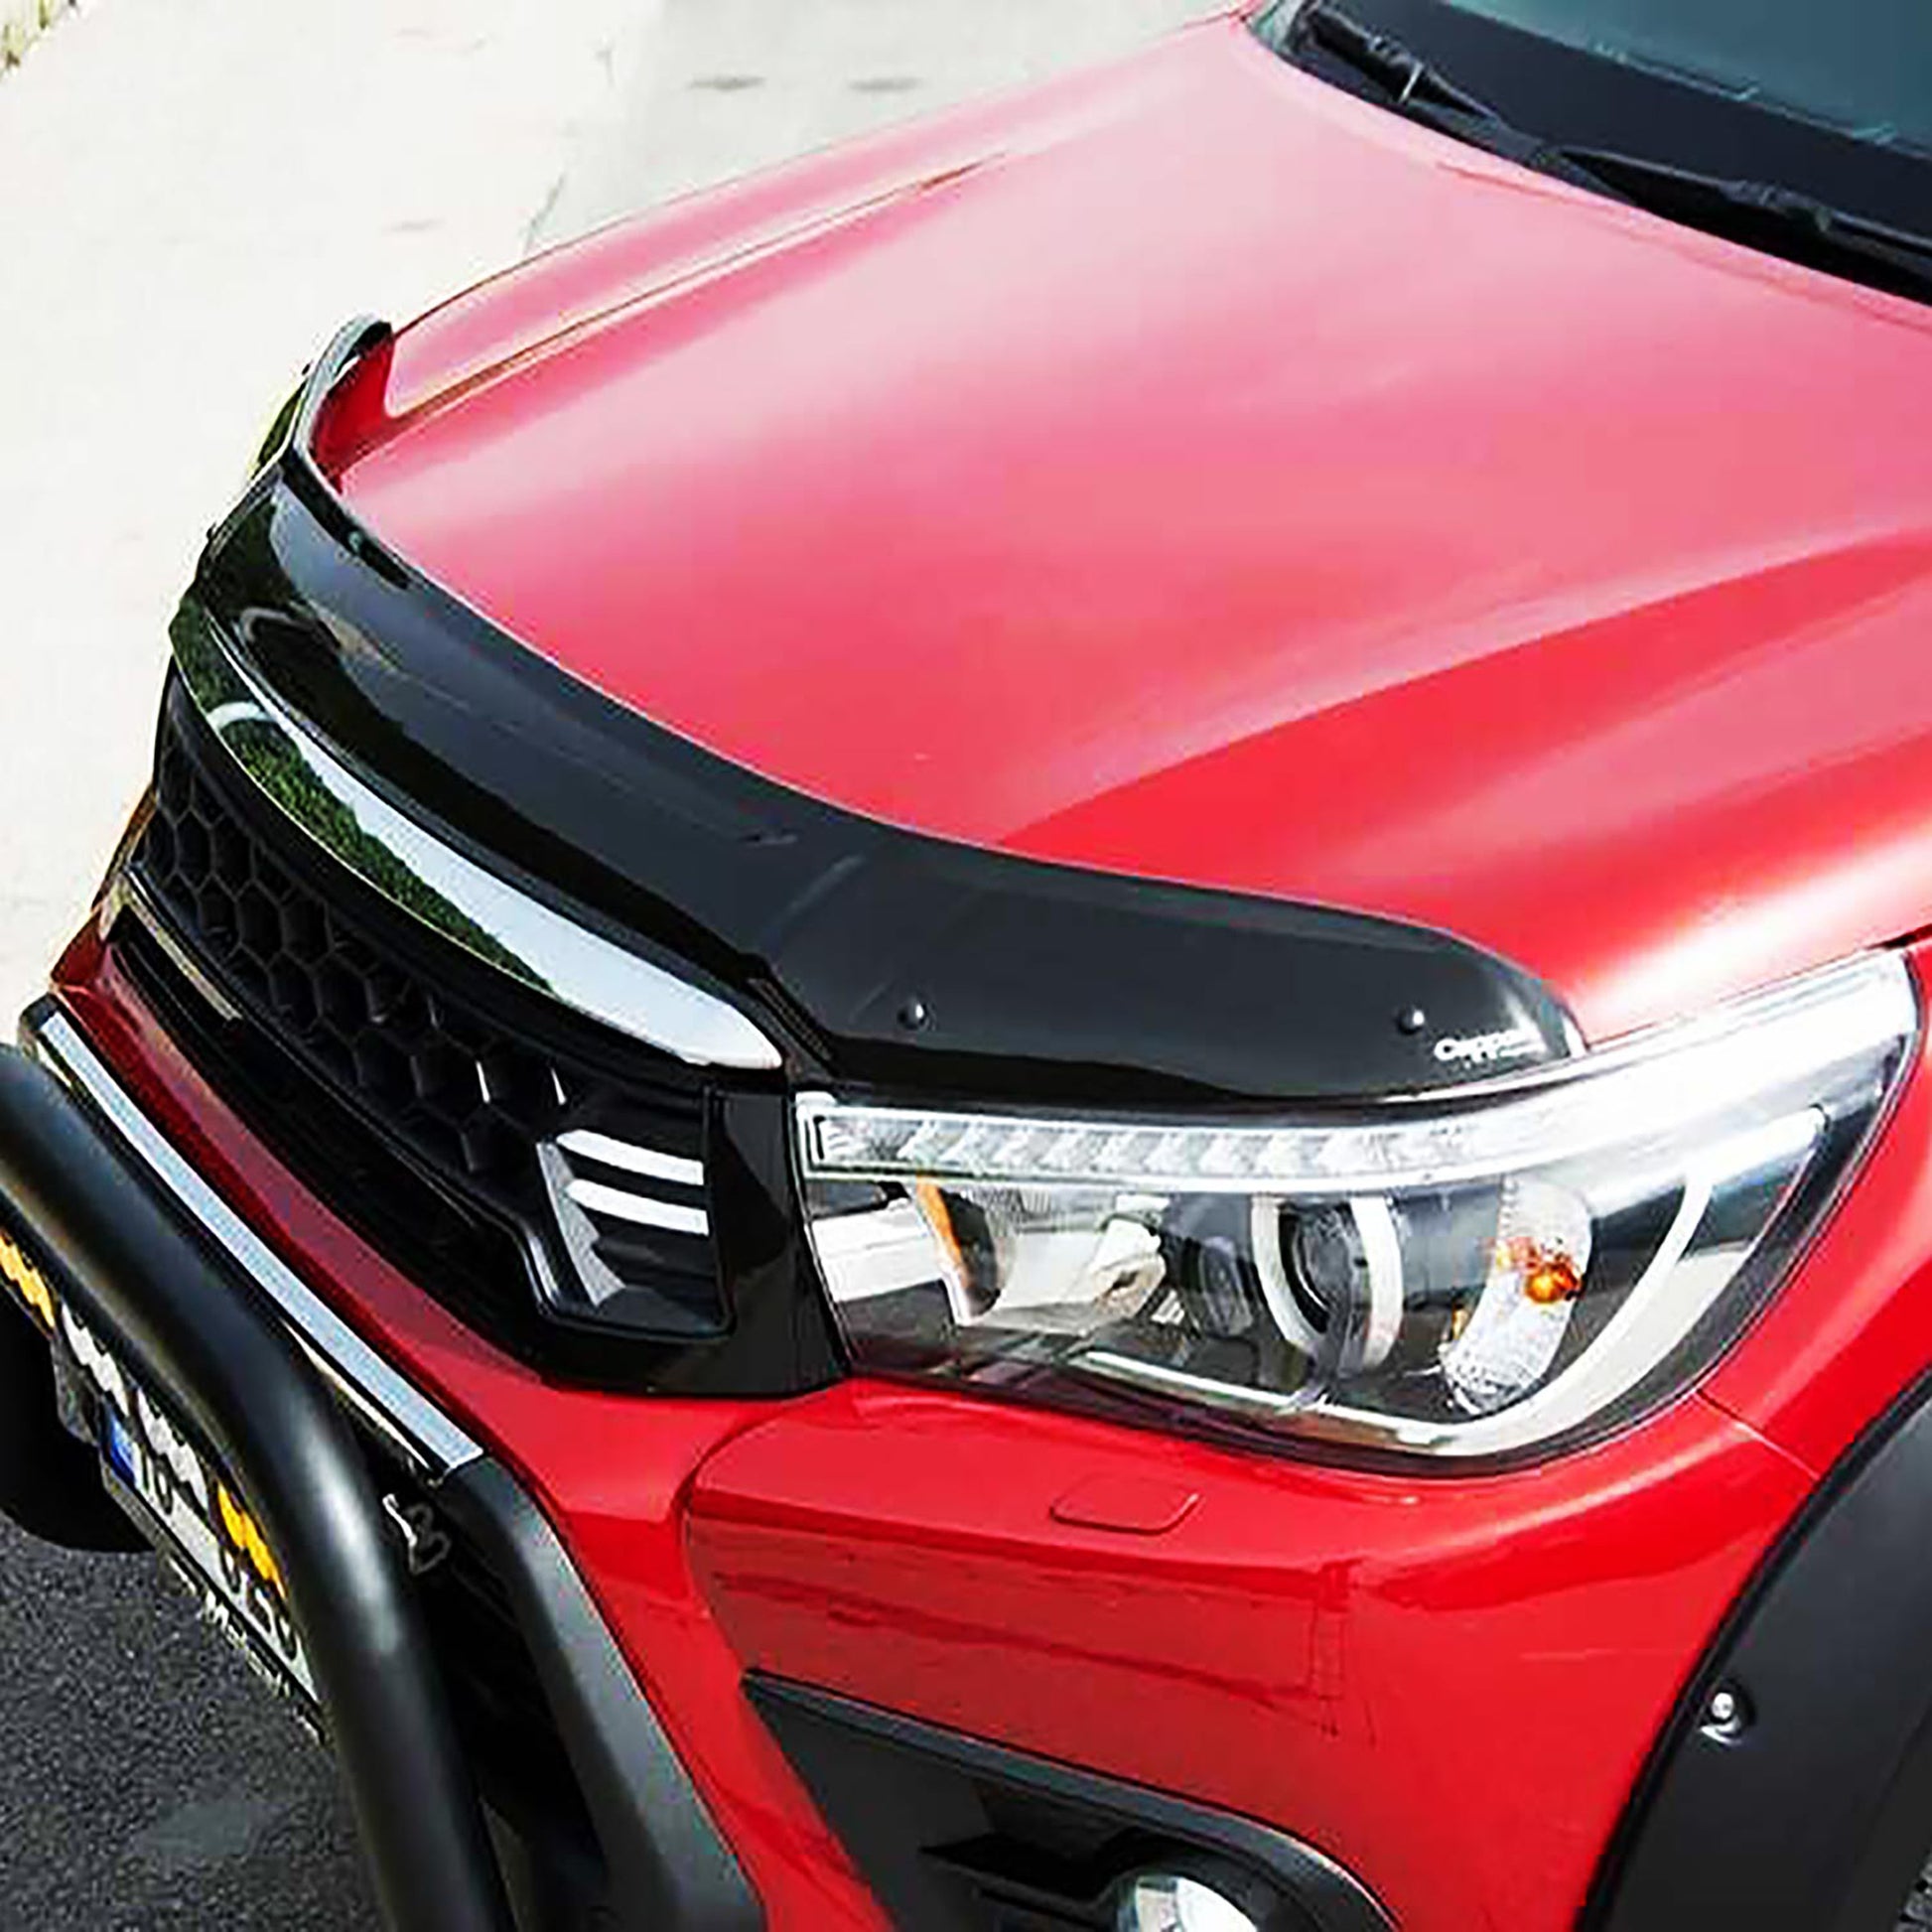 Toyota Hilux Ön Kaput Rüzgarlığı Aksesuarları Detaylı Resimleri, Kampanya bilgileri ve fiyatı - 4